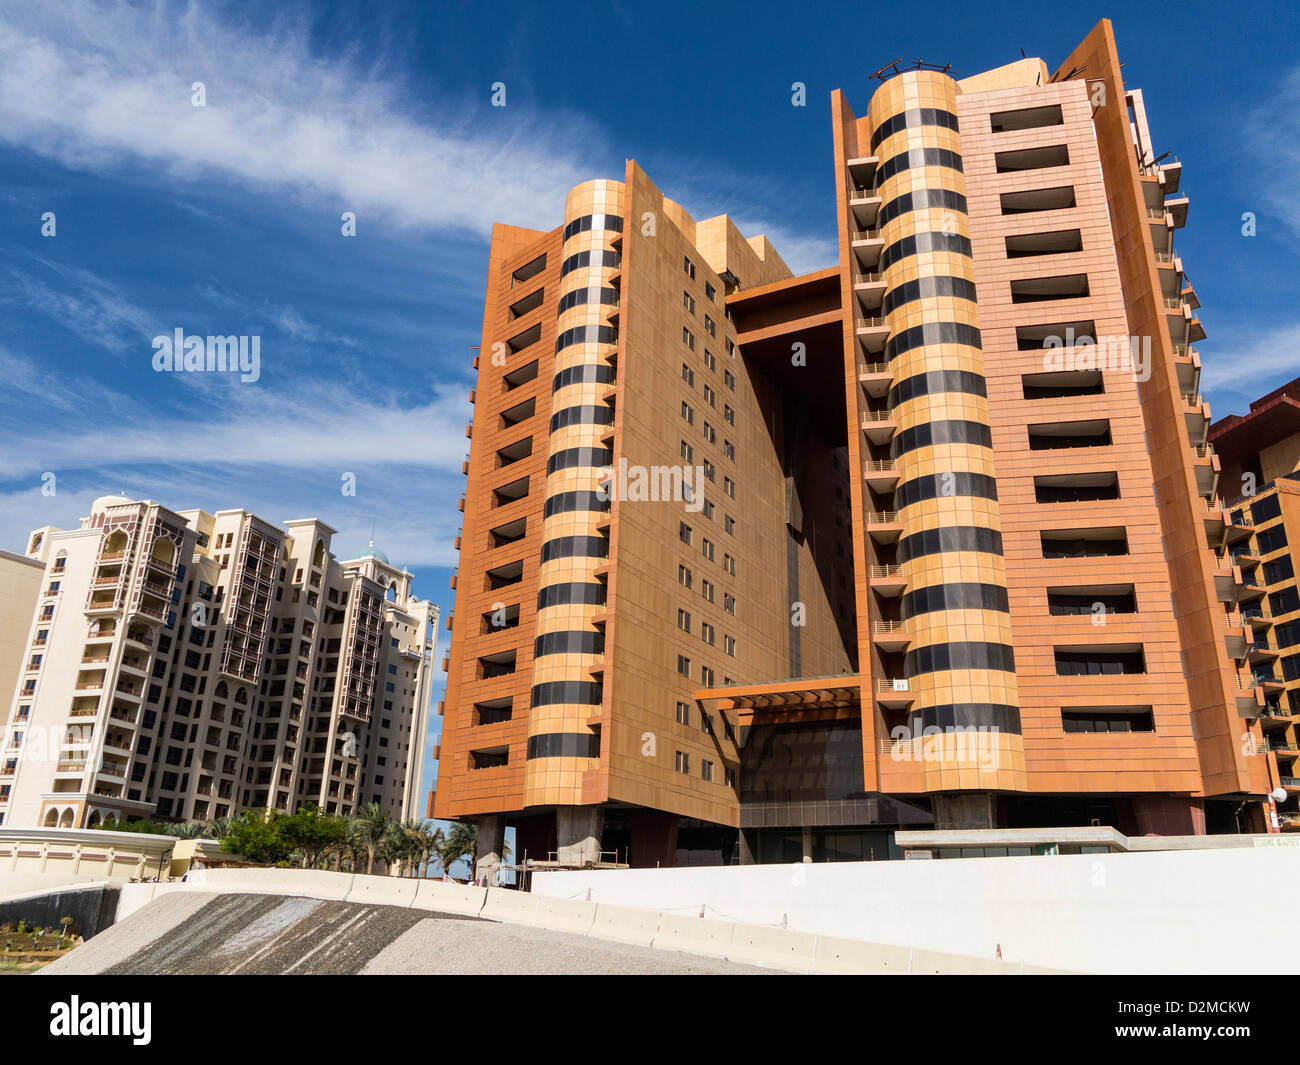 La moderna architettura di alti edifici residenziali - Appartamenti costiera, Dubai, UAE Foto Stock